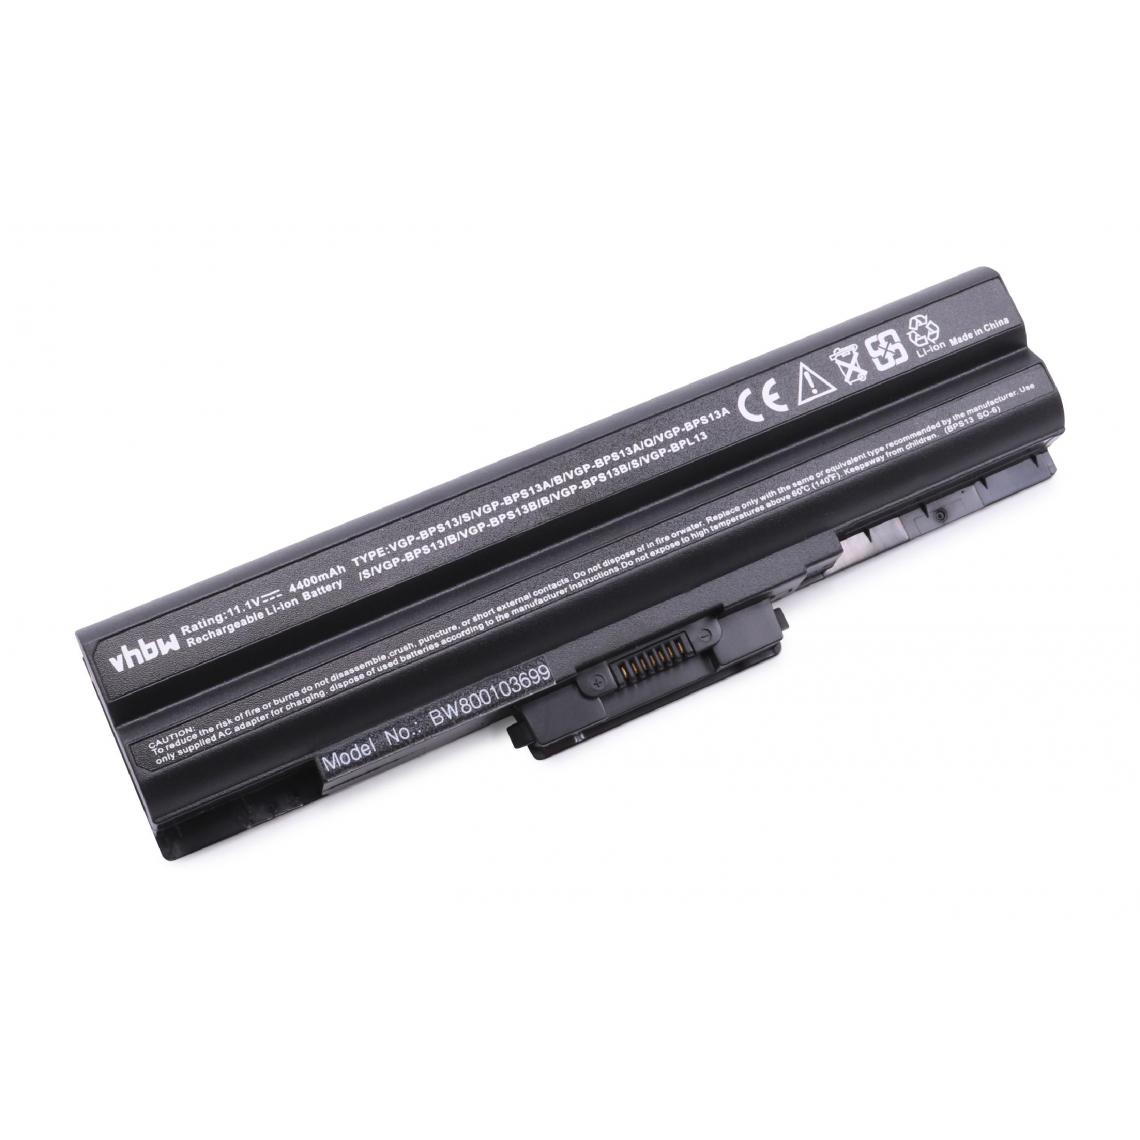 Vhbw - vhbw Batterie compatible avec Sony Vaio VGN-SR25T/P, VGN-SR25T/S, VGN-SR26/B, VGN-SR26/P ordinateur portable (4400mAh, 11,1V, noir) - Batterie PC Portable